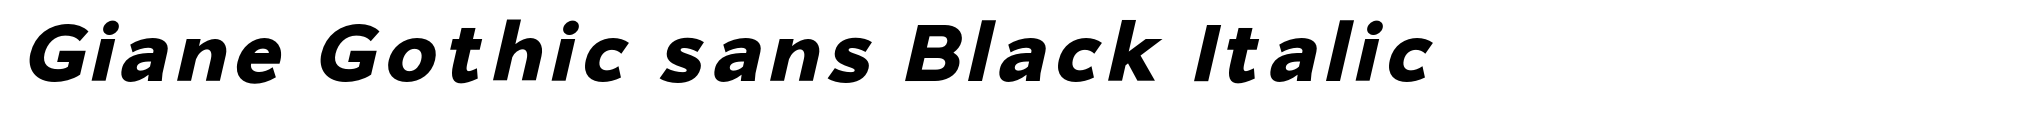 Giane Gothic sans Black Italic image